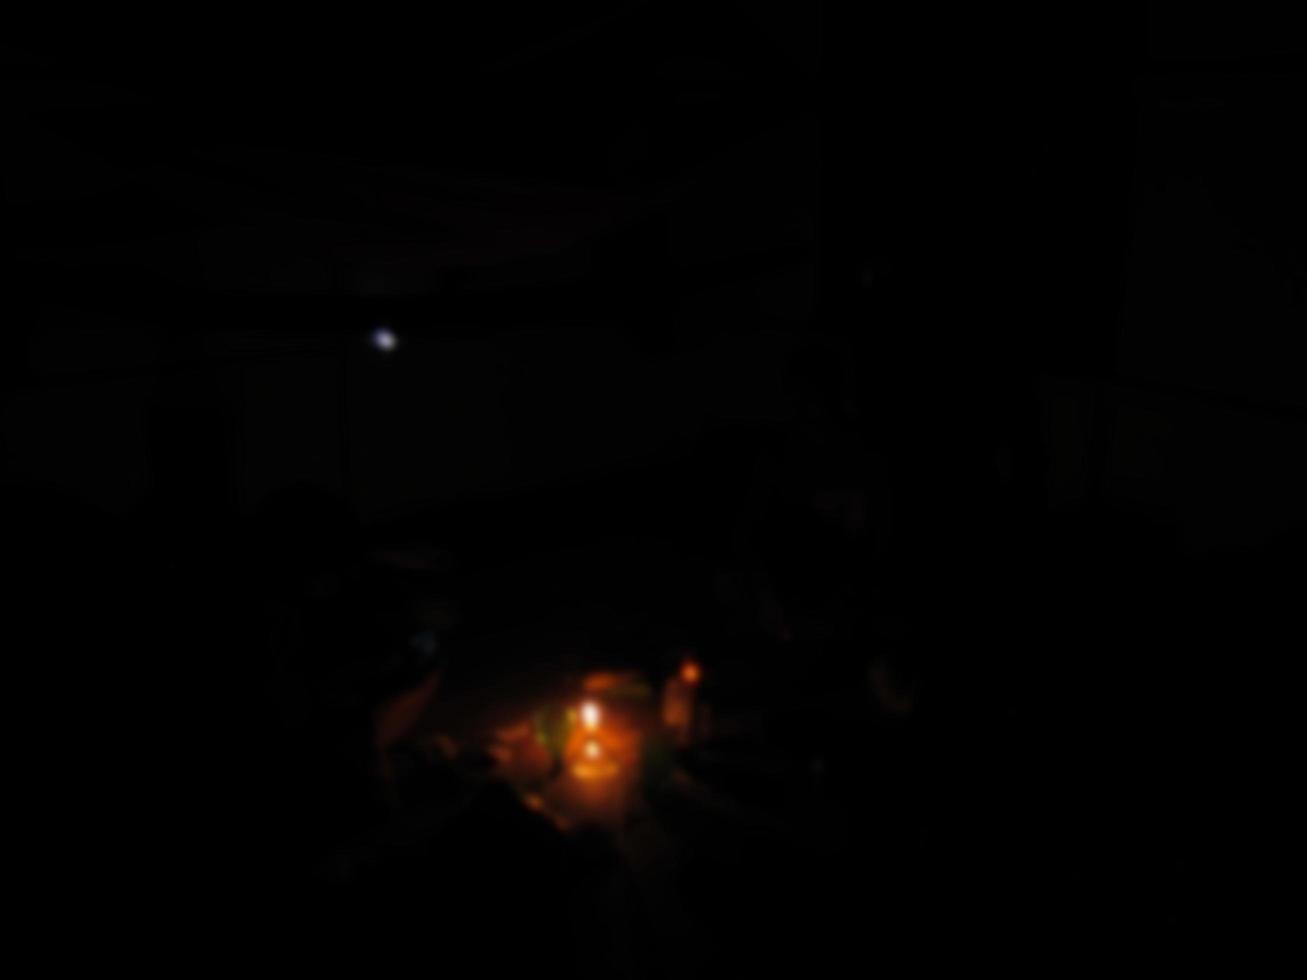 défocalisé sur une bougie allumée illumine la pièce la nuit photo